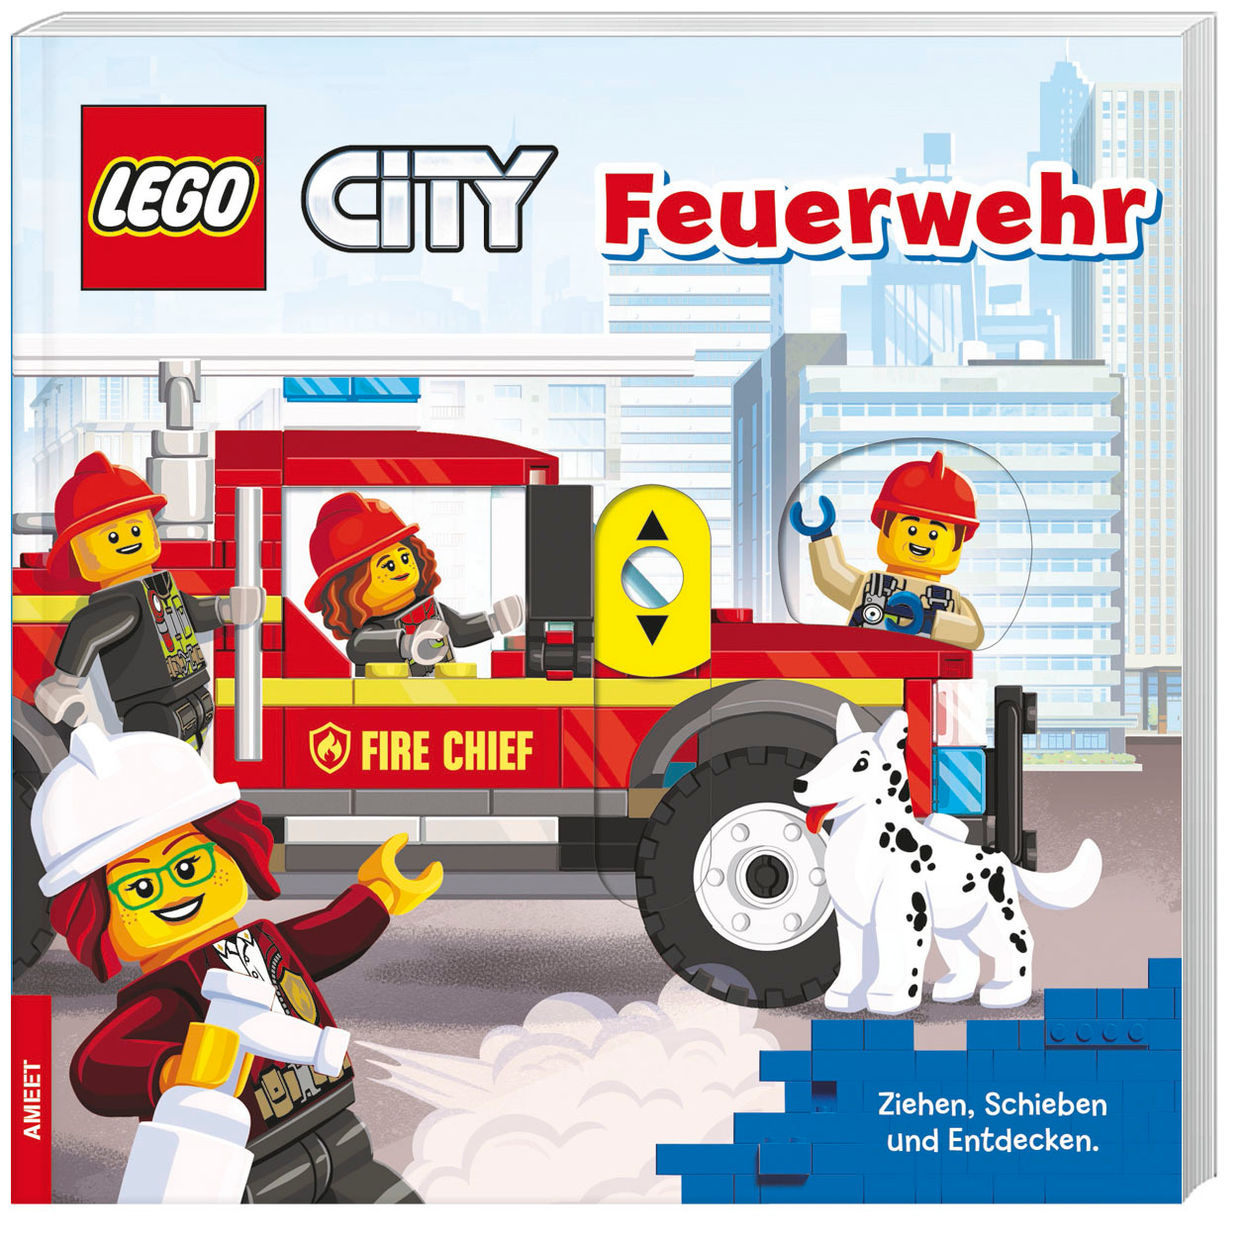 LEGO® City - Feuerwehr Buch jetzt online bei Weltbild.at bestellen